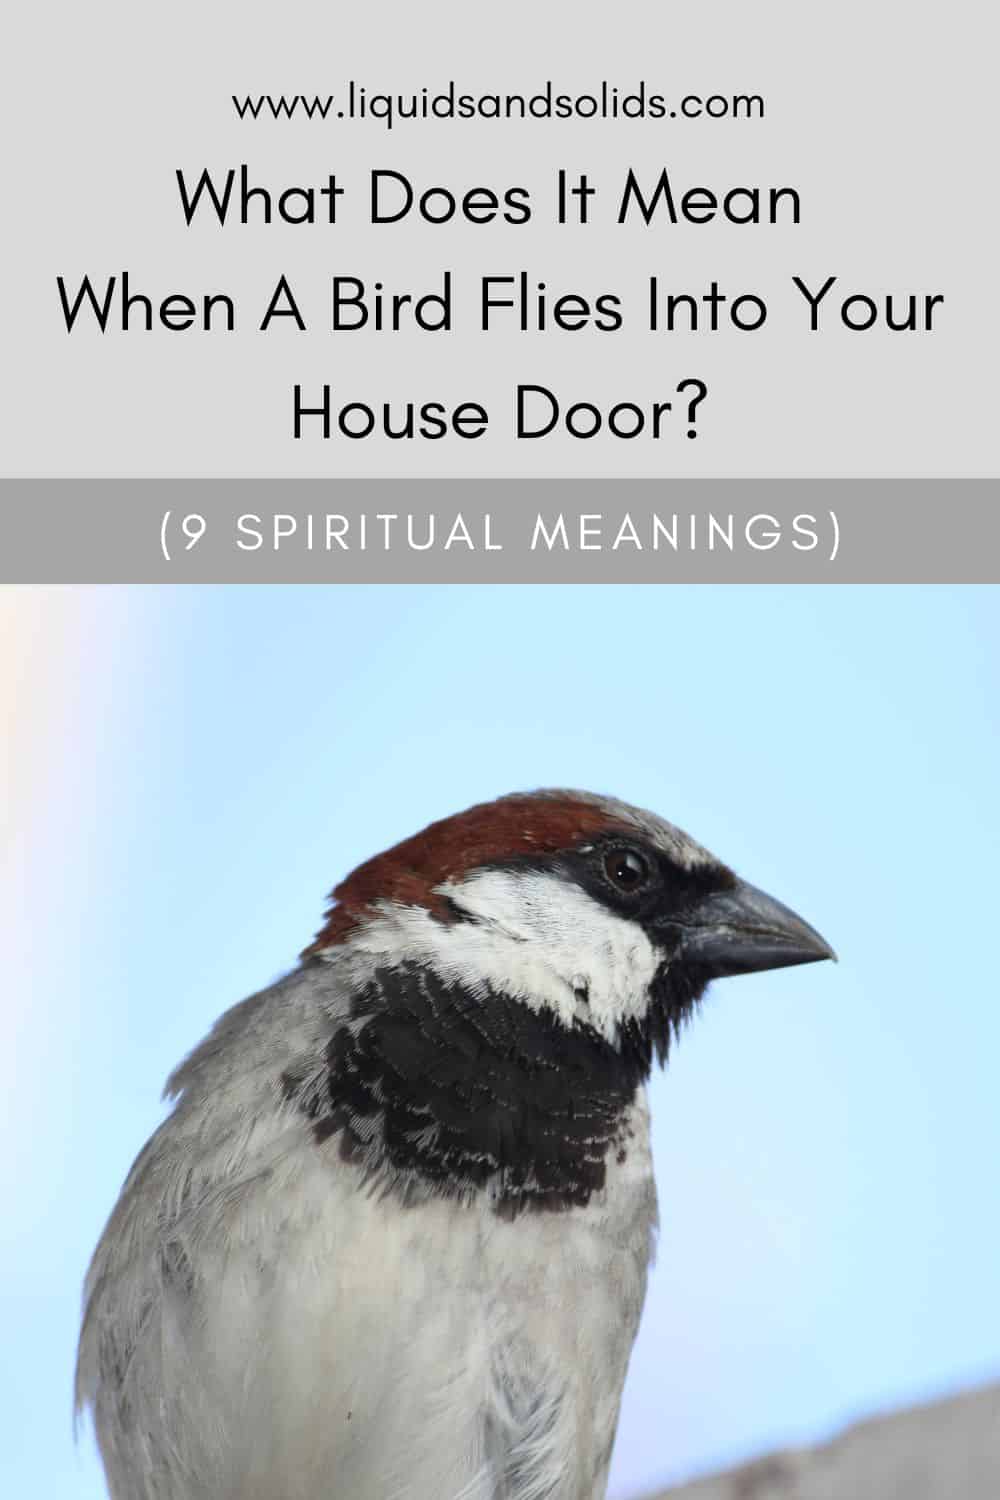  რას ნიშნავს, როცა ჩიტი შემოფრინდება შენი სახლის კარში? (9 სულიერი მნიშვნელობა)